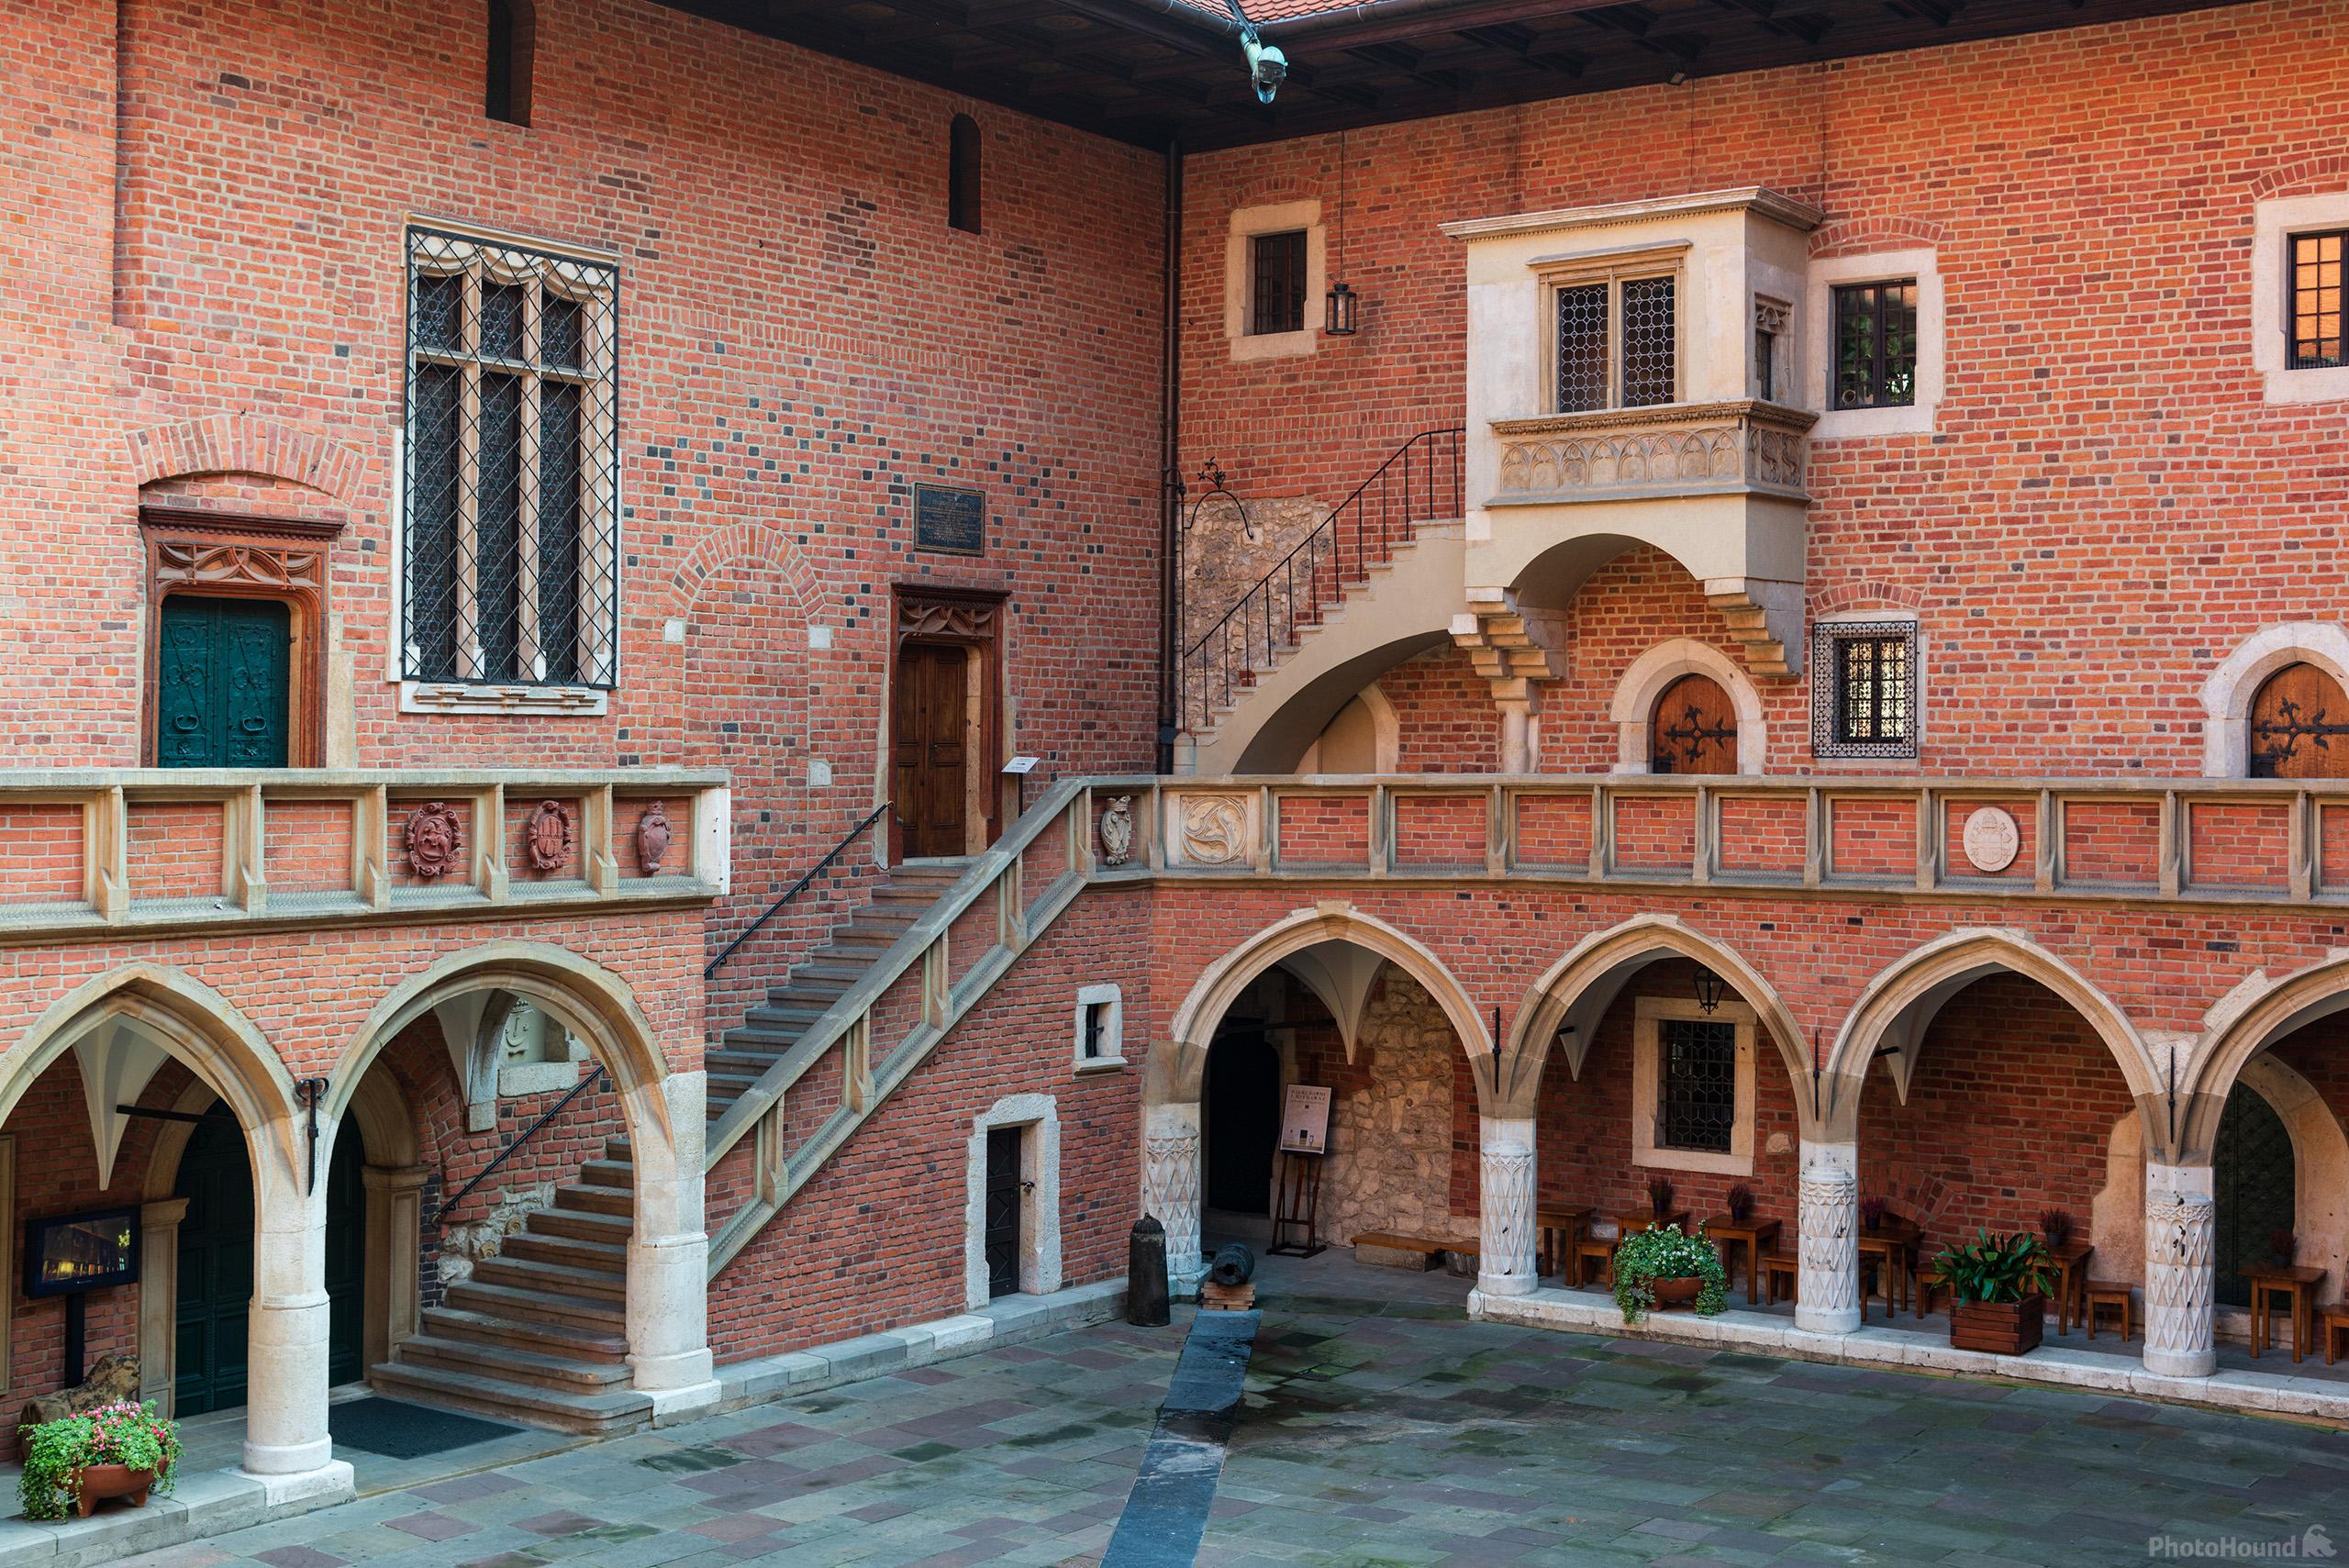 Image of Collegium Maius Courtyard by Luka Esenko